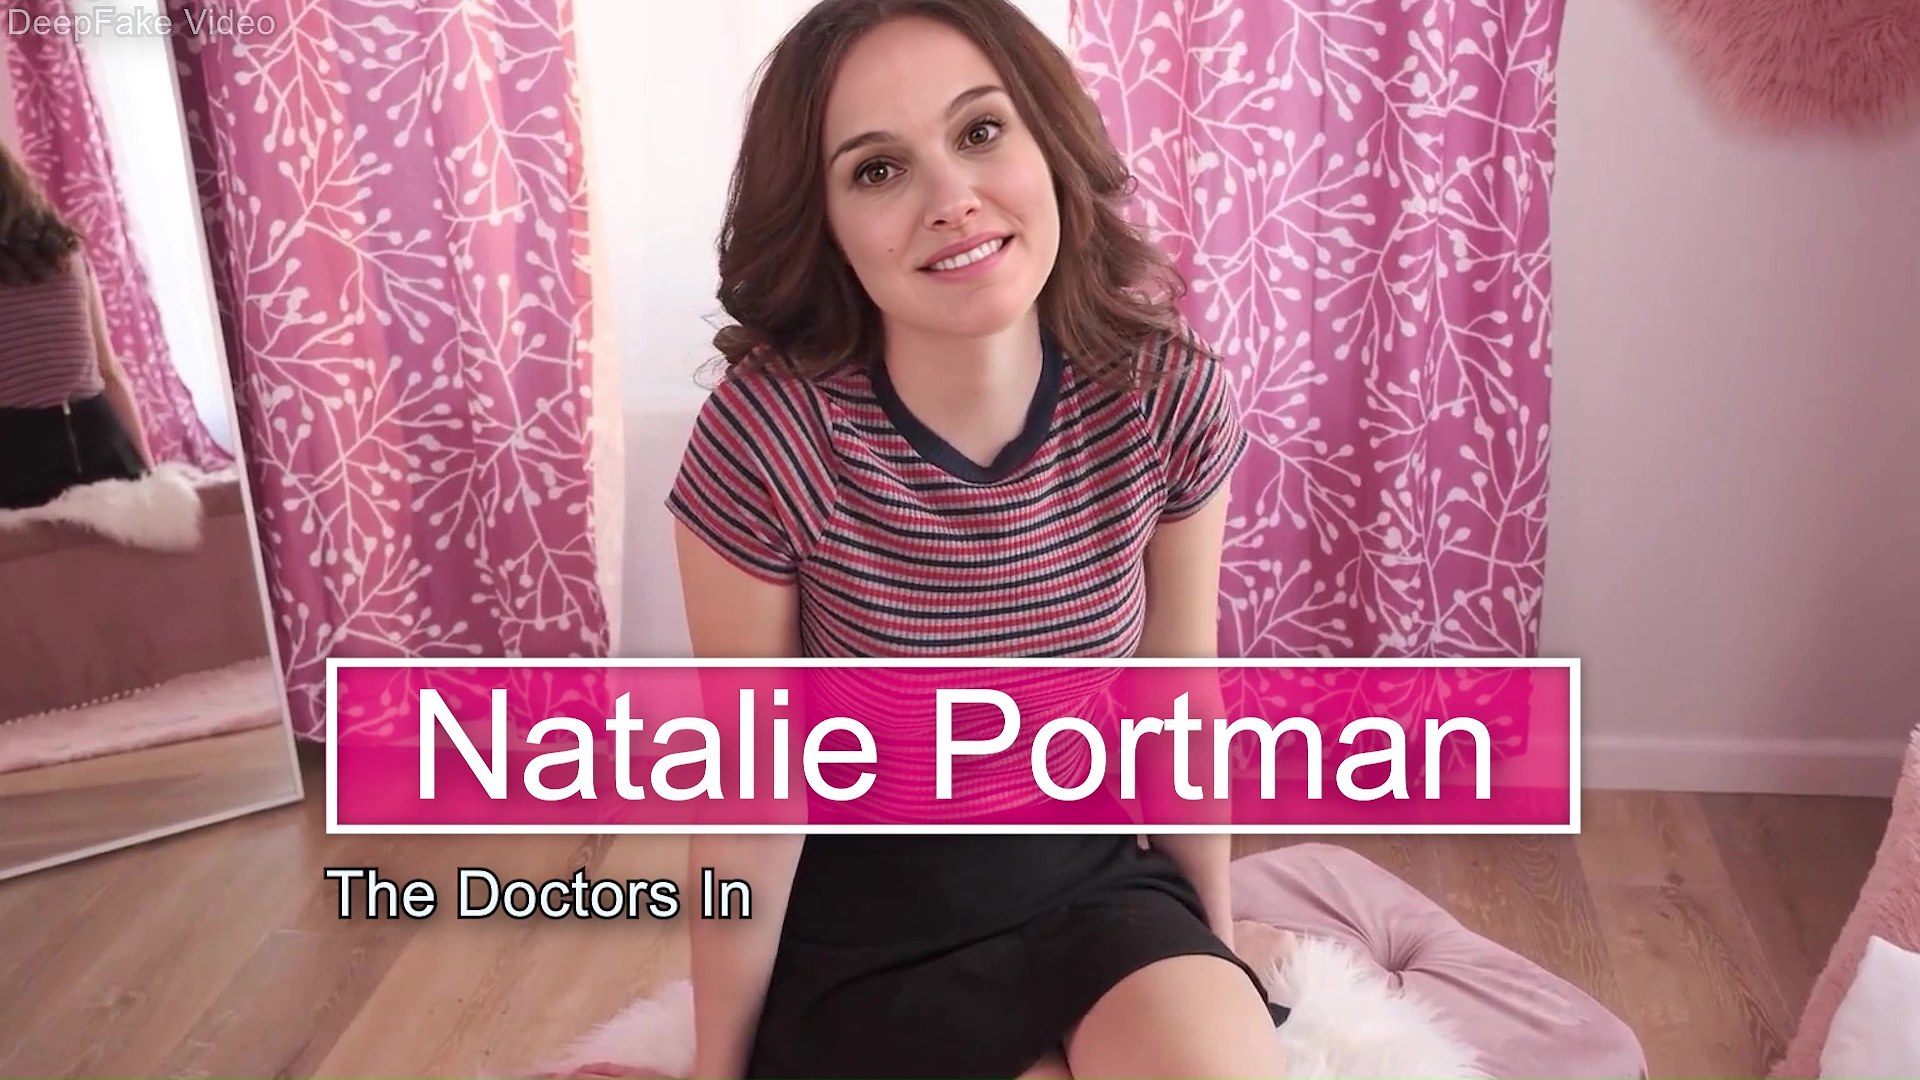 Natalie Portman - The Doctors In - Trailer